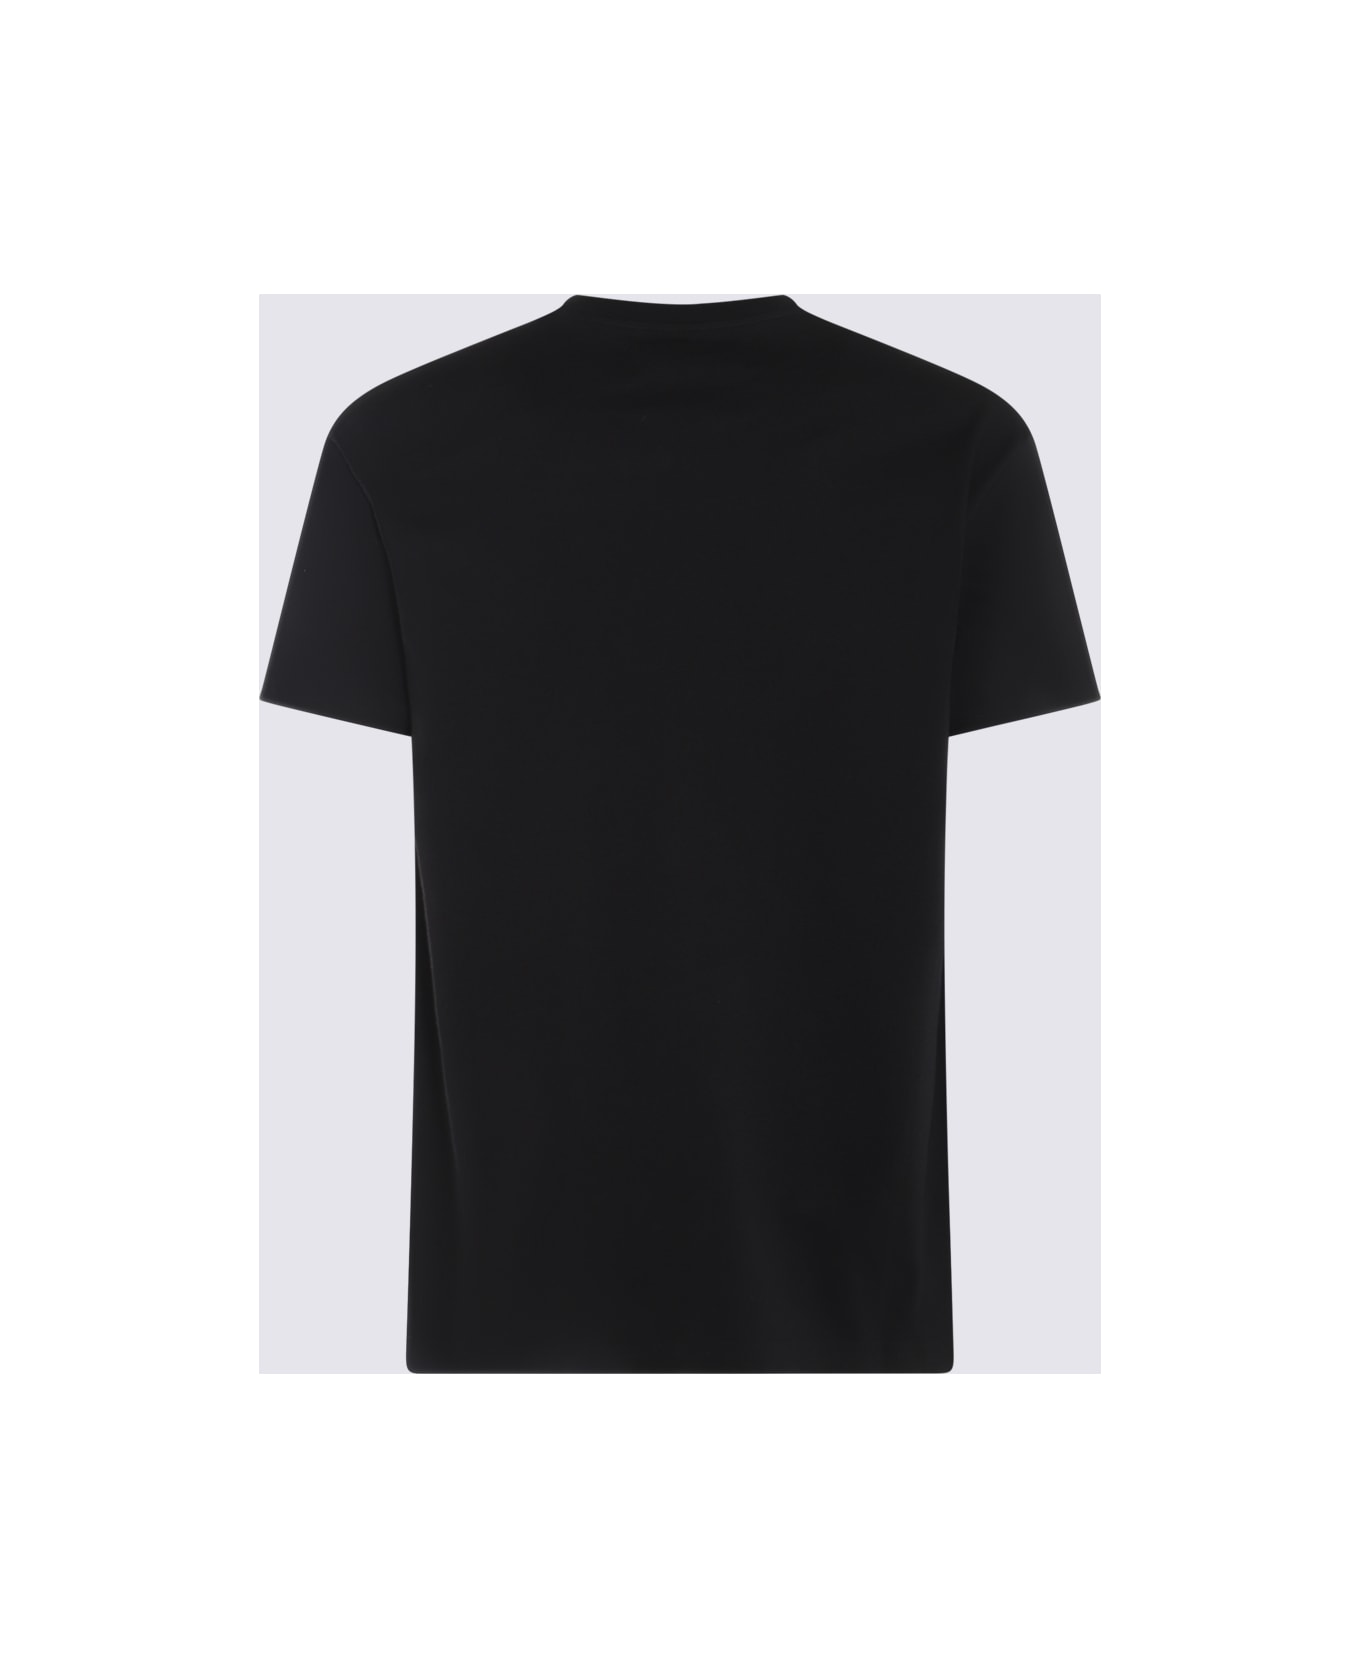 Vivienne Westwood Black And Beige Cotton T-shirt - Black